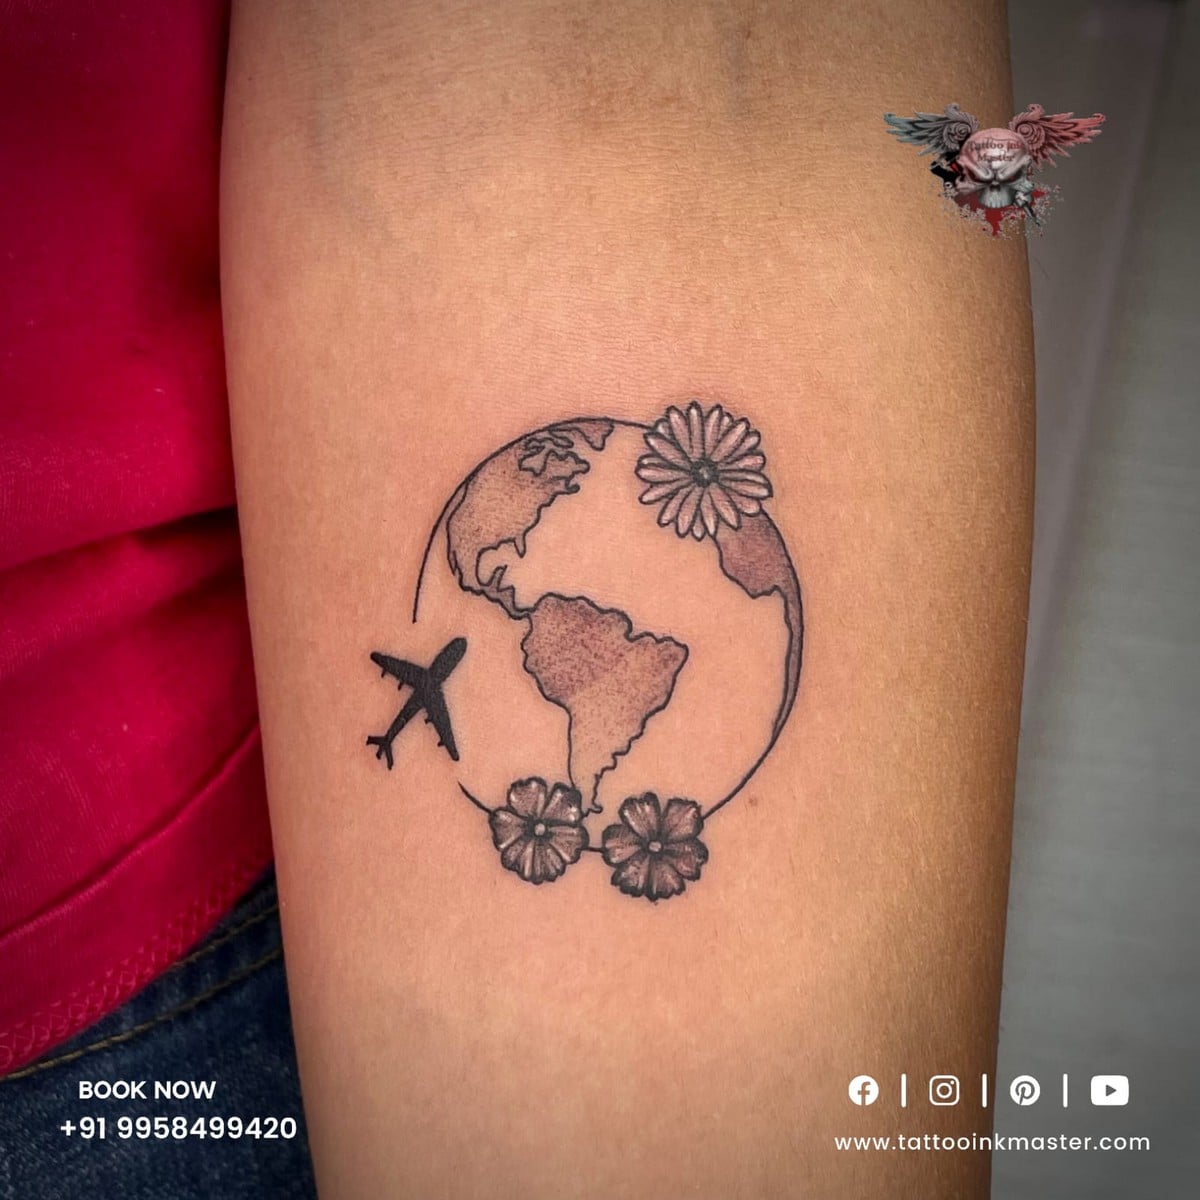 Meaning of avi tattoos | BlendUp